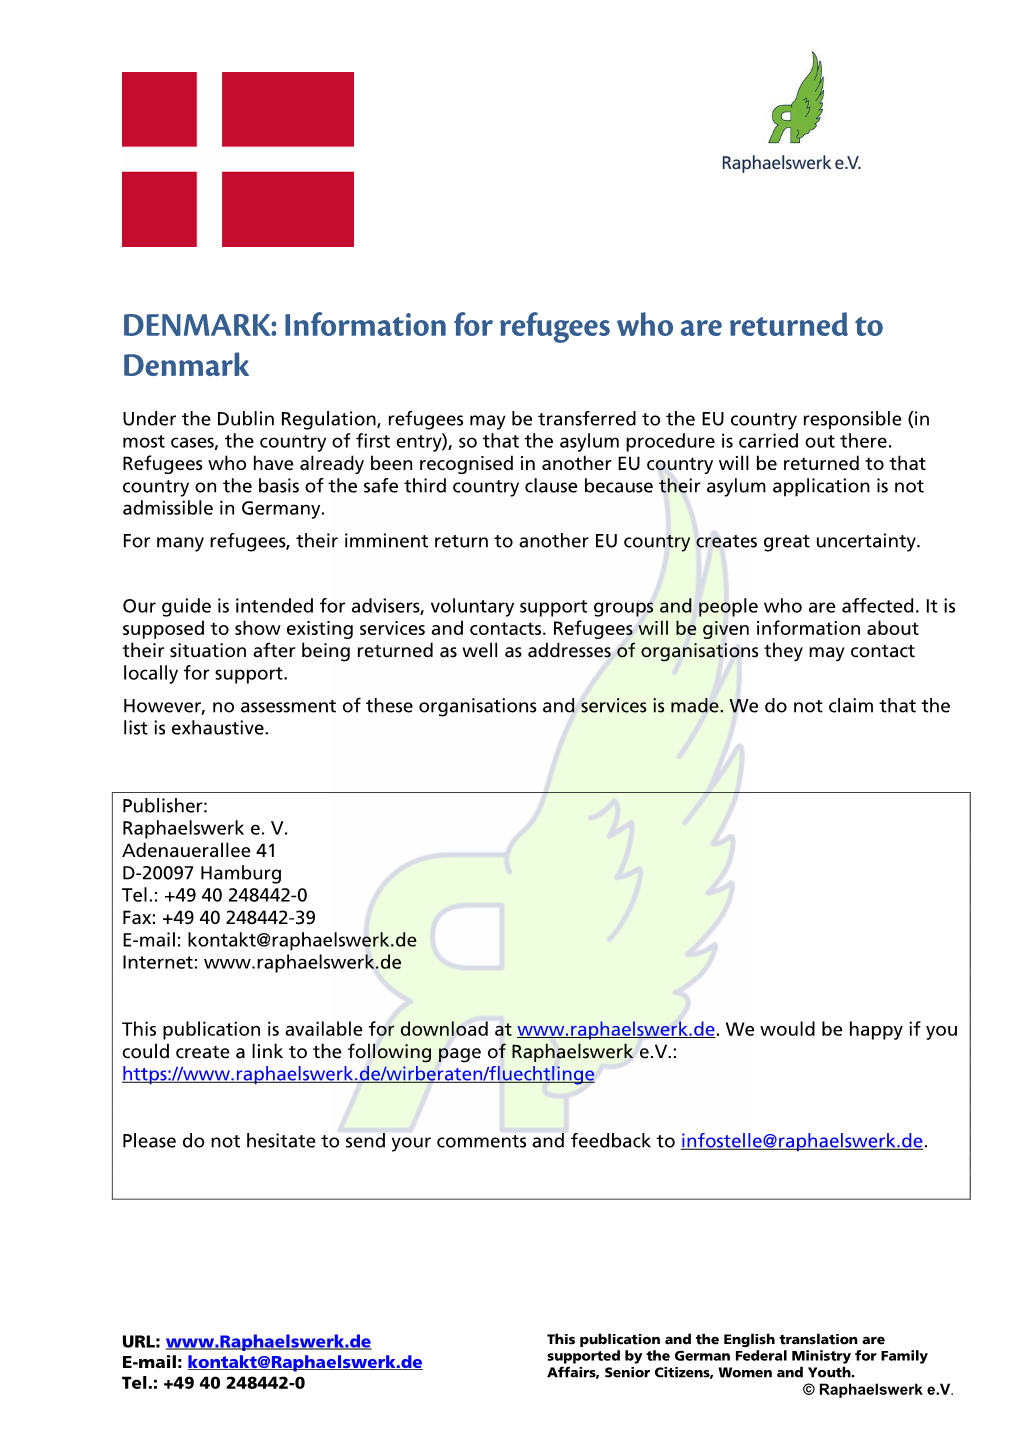 DENMARK: Information for Refugees Who Are Returned to Denmark